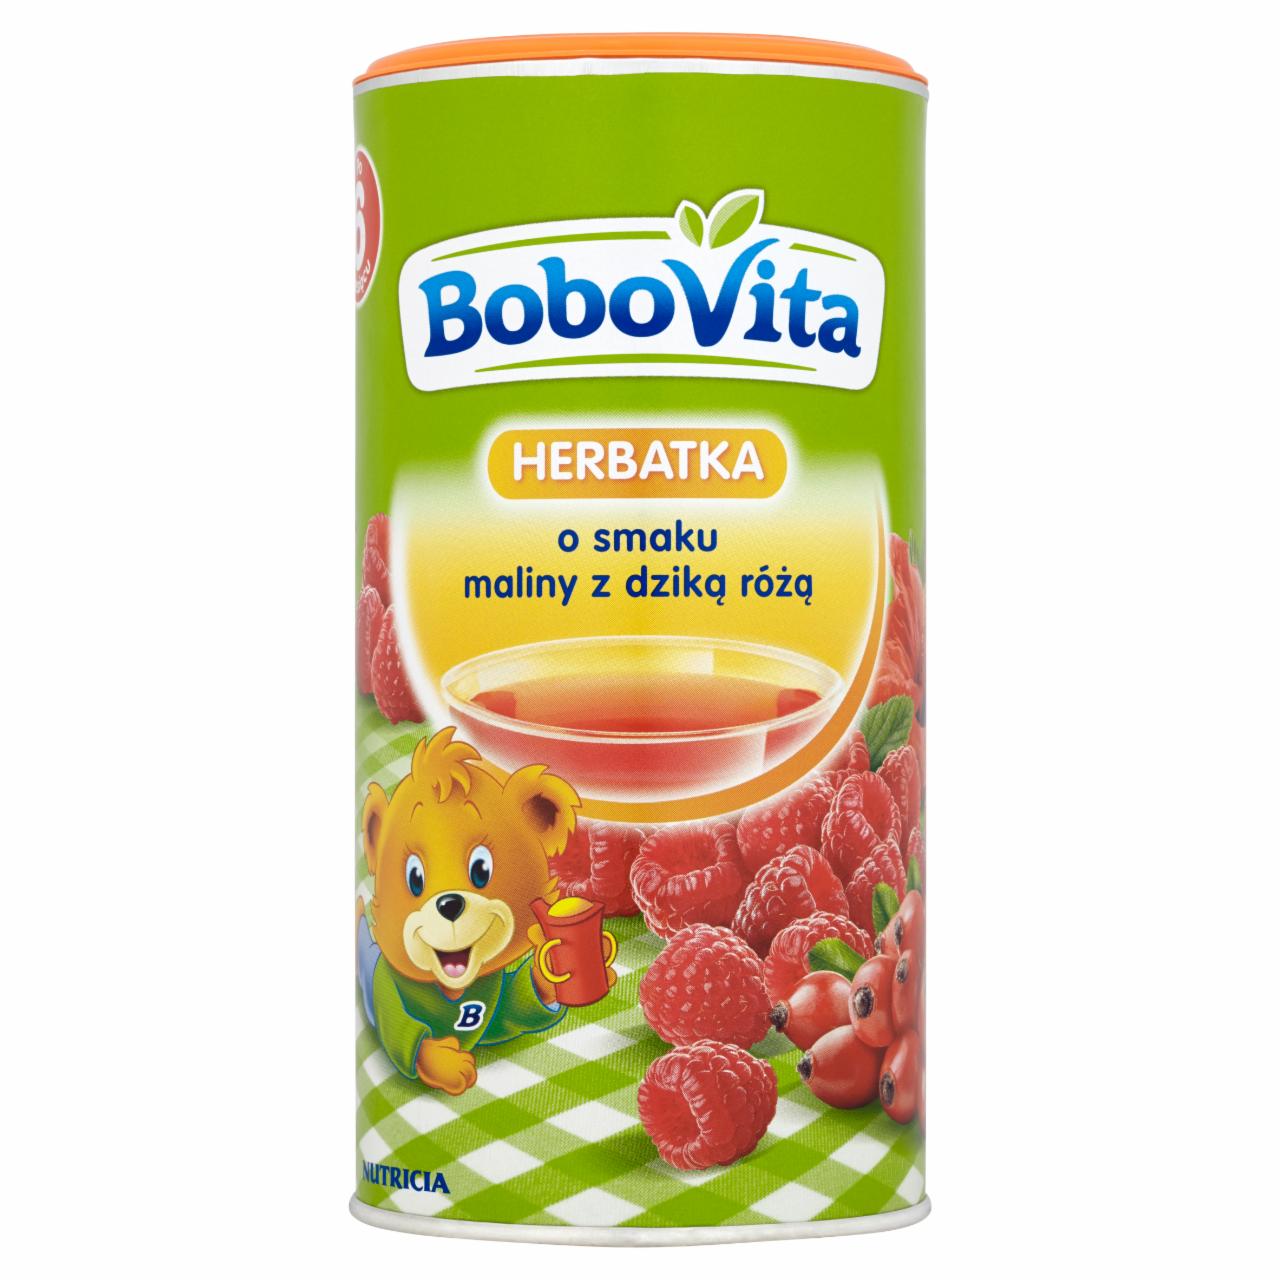 Zdjęcia - BoboVita Herbatka o smaku maliny z dziką różą po 6 miesiącu 200 g